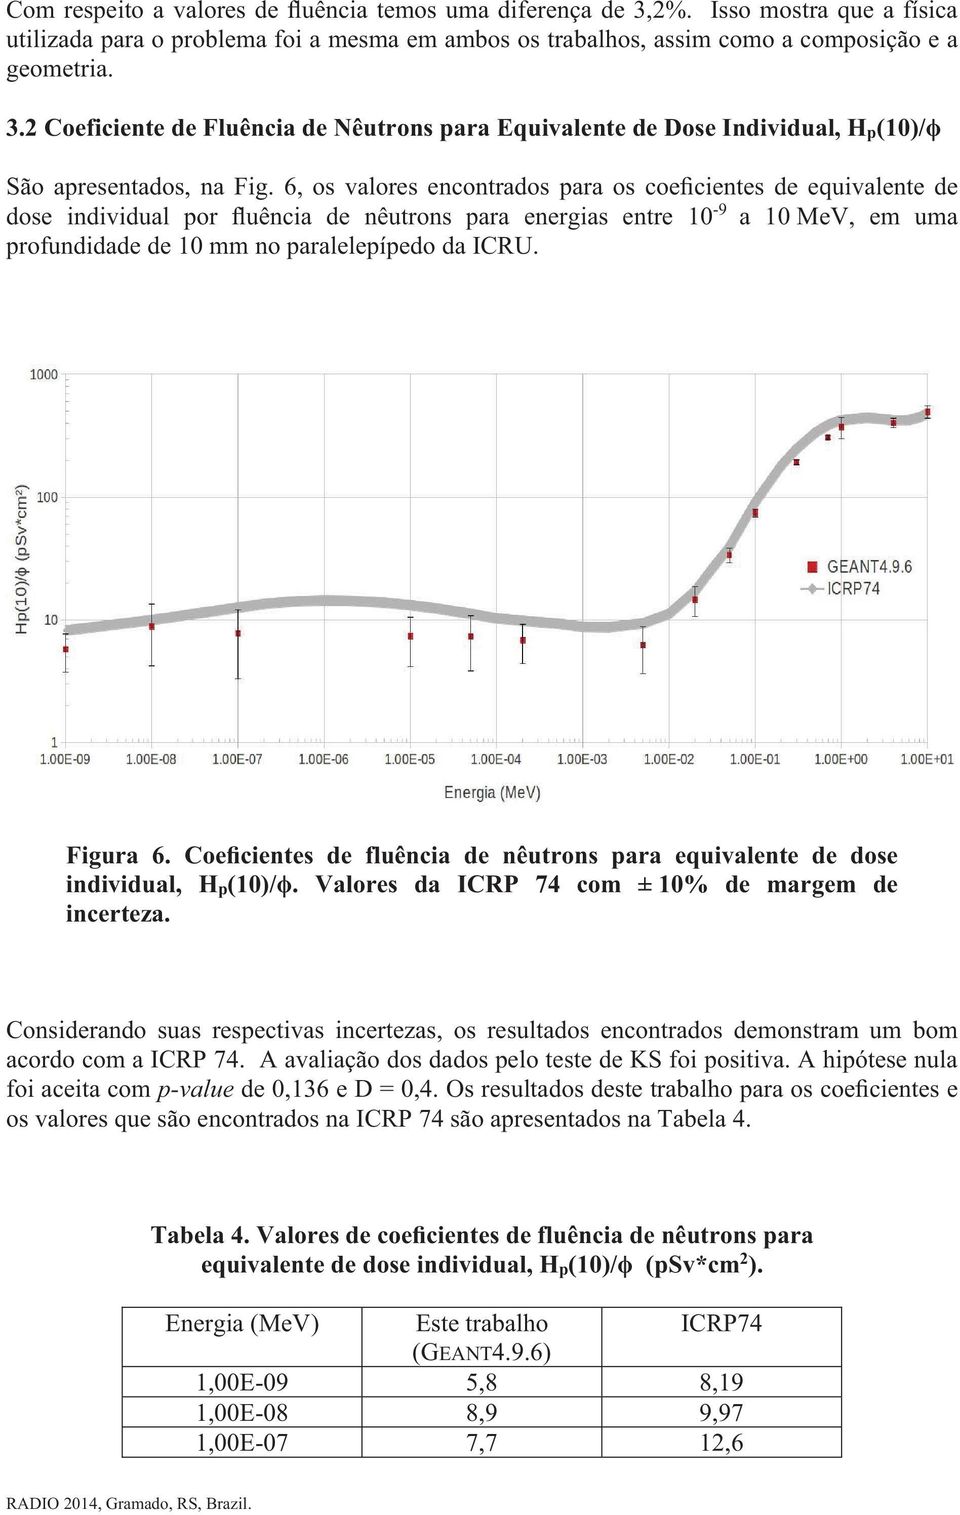 Figura 6. Coeficientes de fluência de nêutrons para equivalente de dose individual, H p (10)/. Valores da ICRP 74 com ± 10% de margem de incerteza.